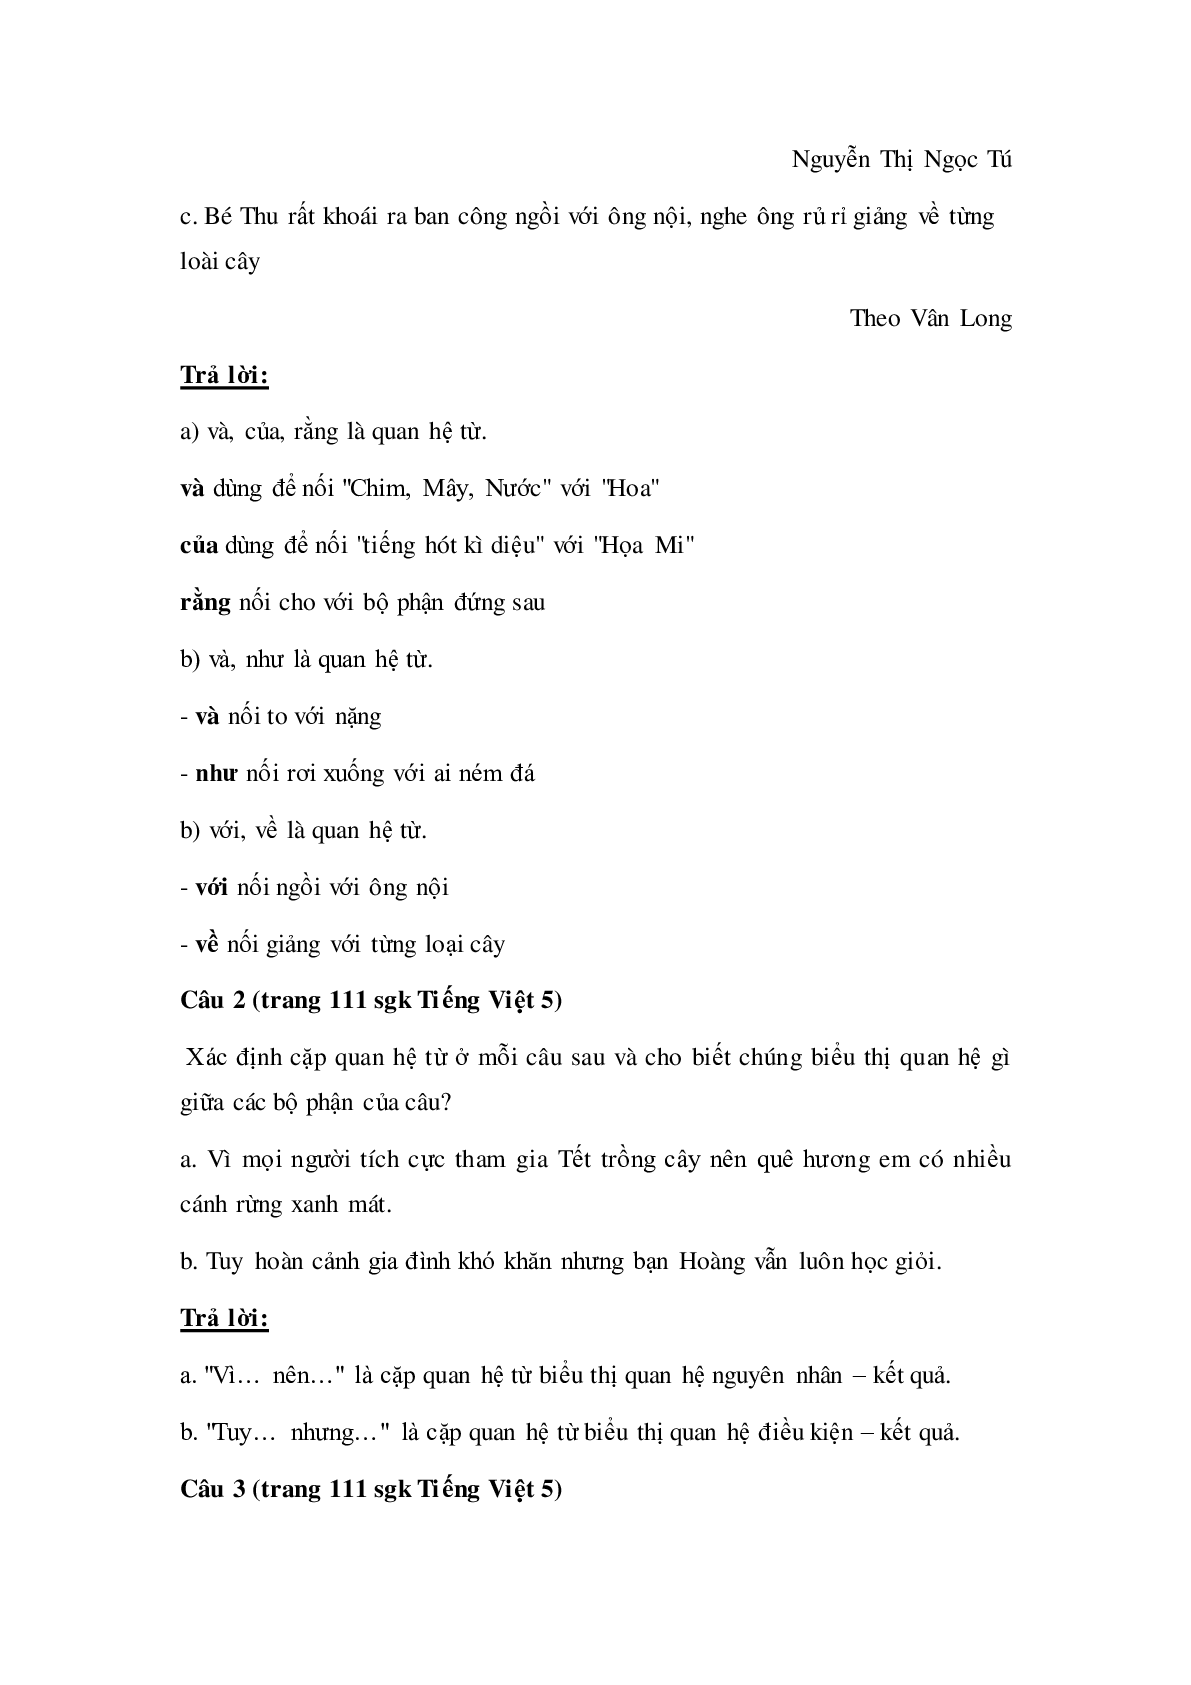 Soạn Tiếng Việt lớp 5: Luyện từ và câu: Quan hệ từ mới nhất (trang 3)